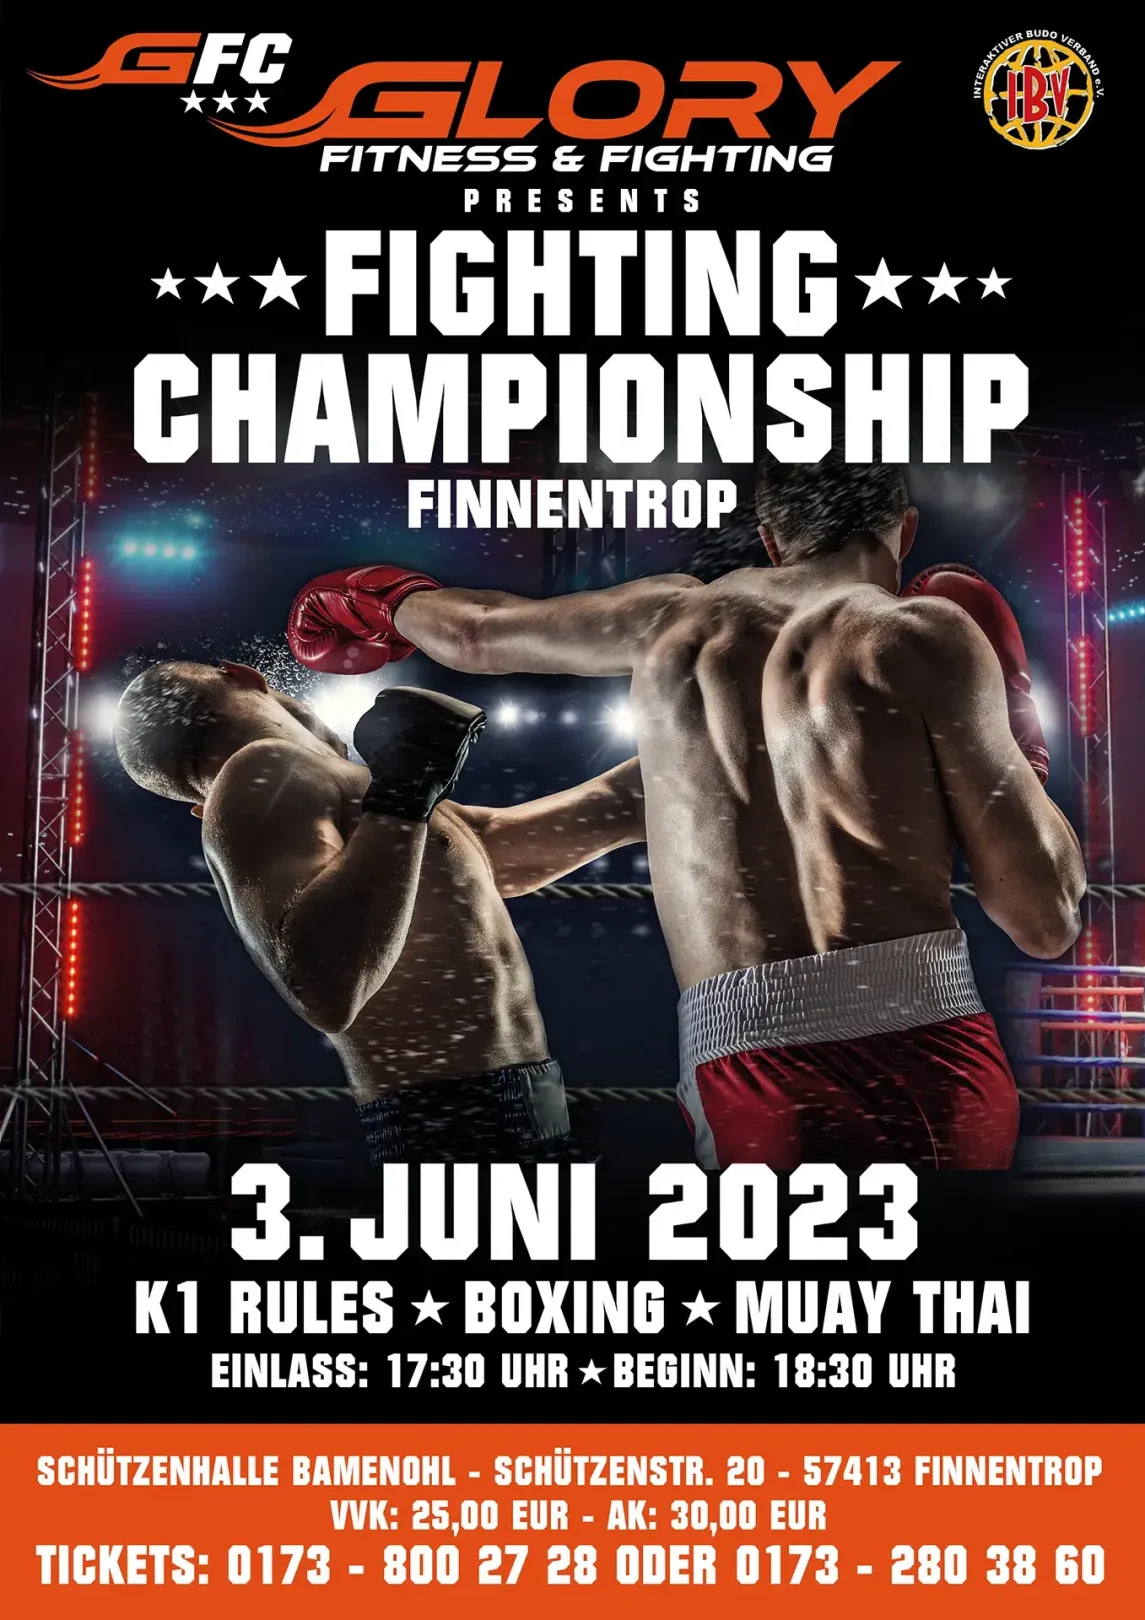 Glory Fighting Championship am 3 Juni 2023 in Finnentrop - Eigene Variante des Vereins